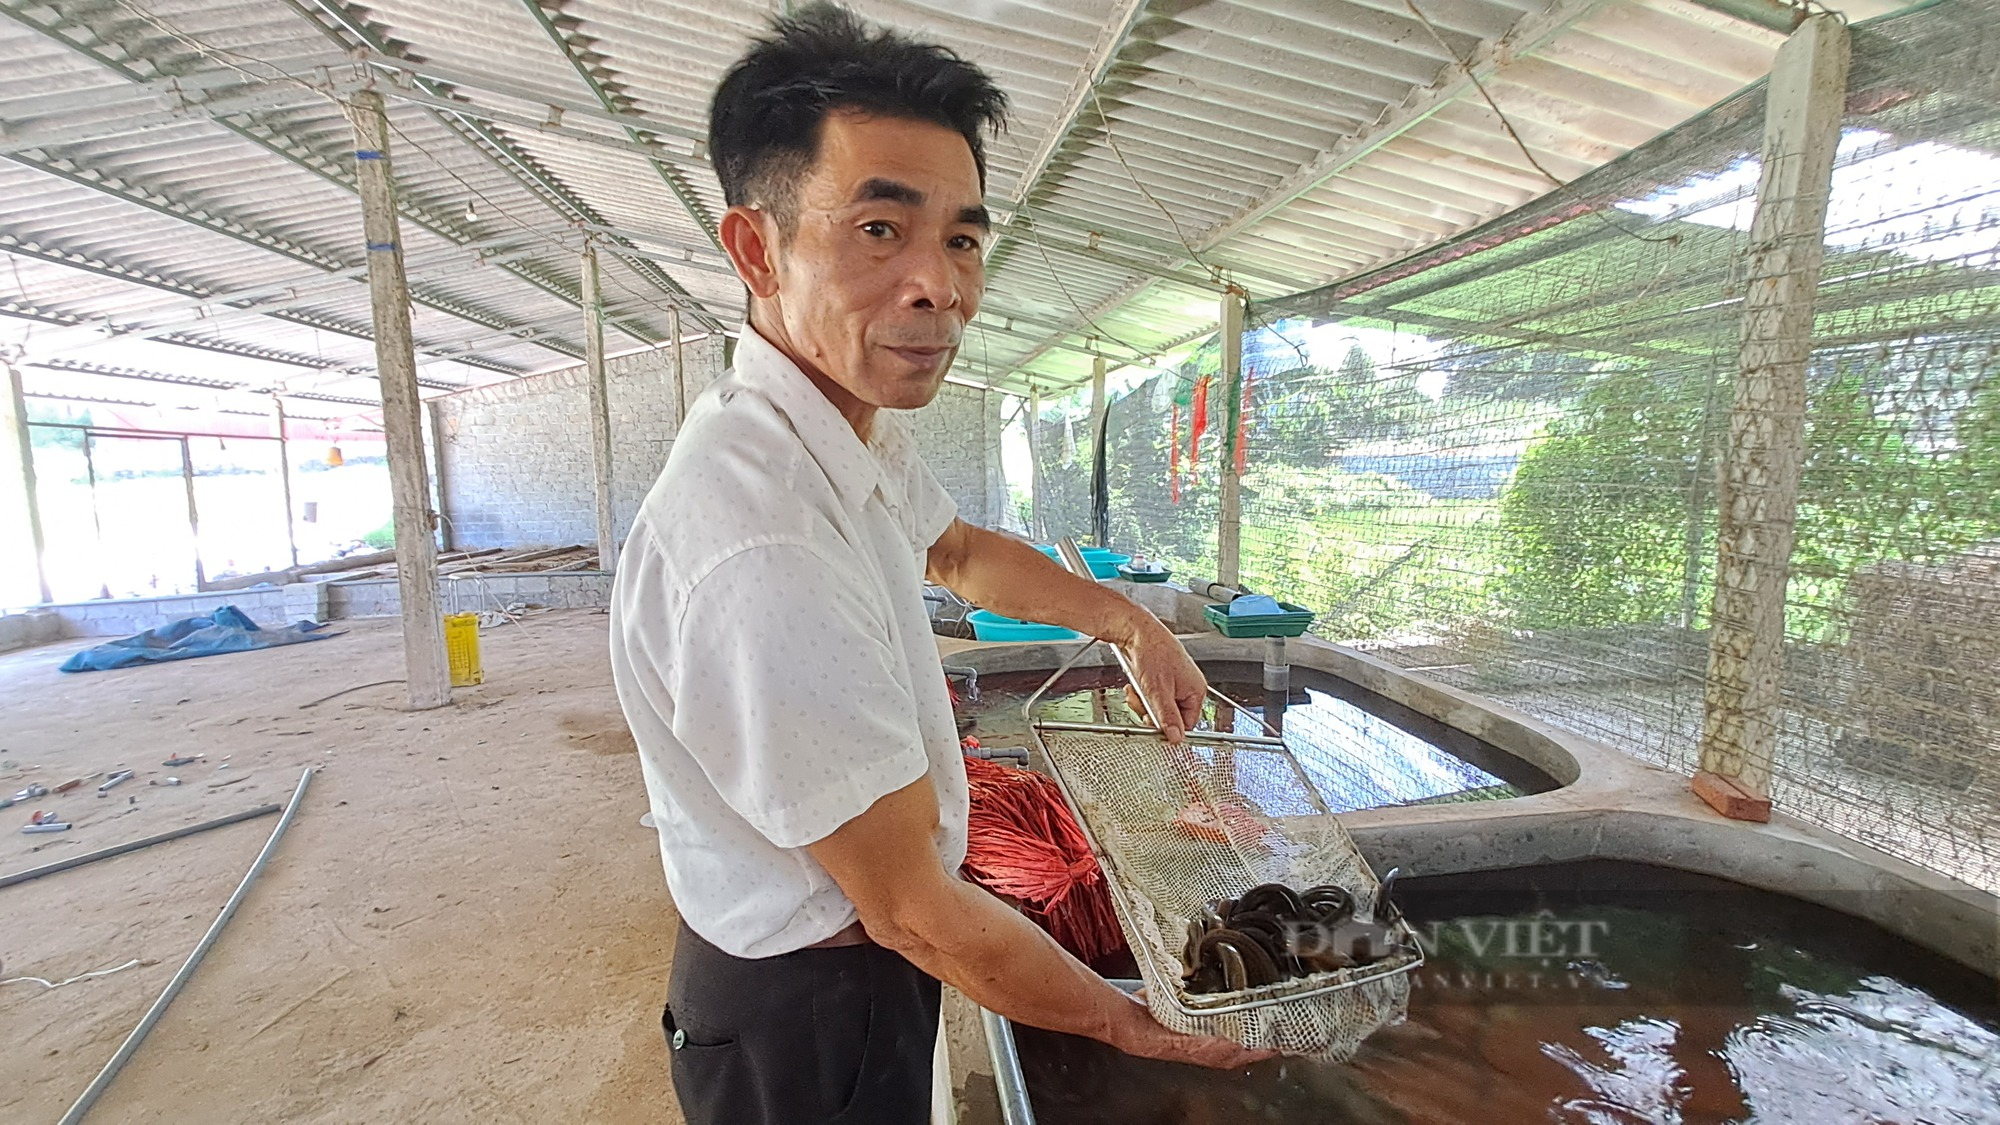  Chuyển từ nuôi gà sang lươn, ông nông dân Thái Nguyên xây cả nhà máy chế biến hướng đến xuất khẩu  - Ảnh 2.